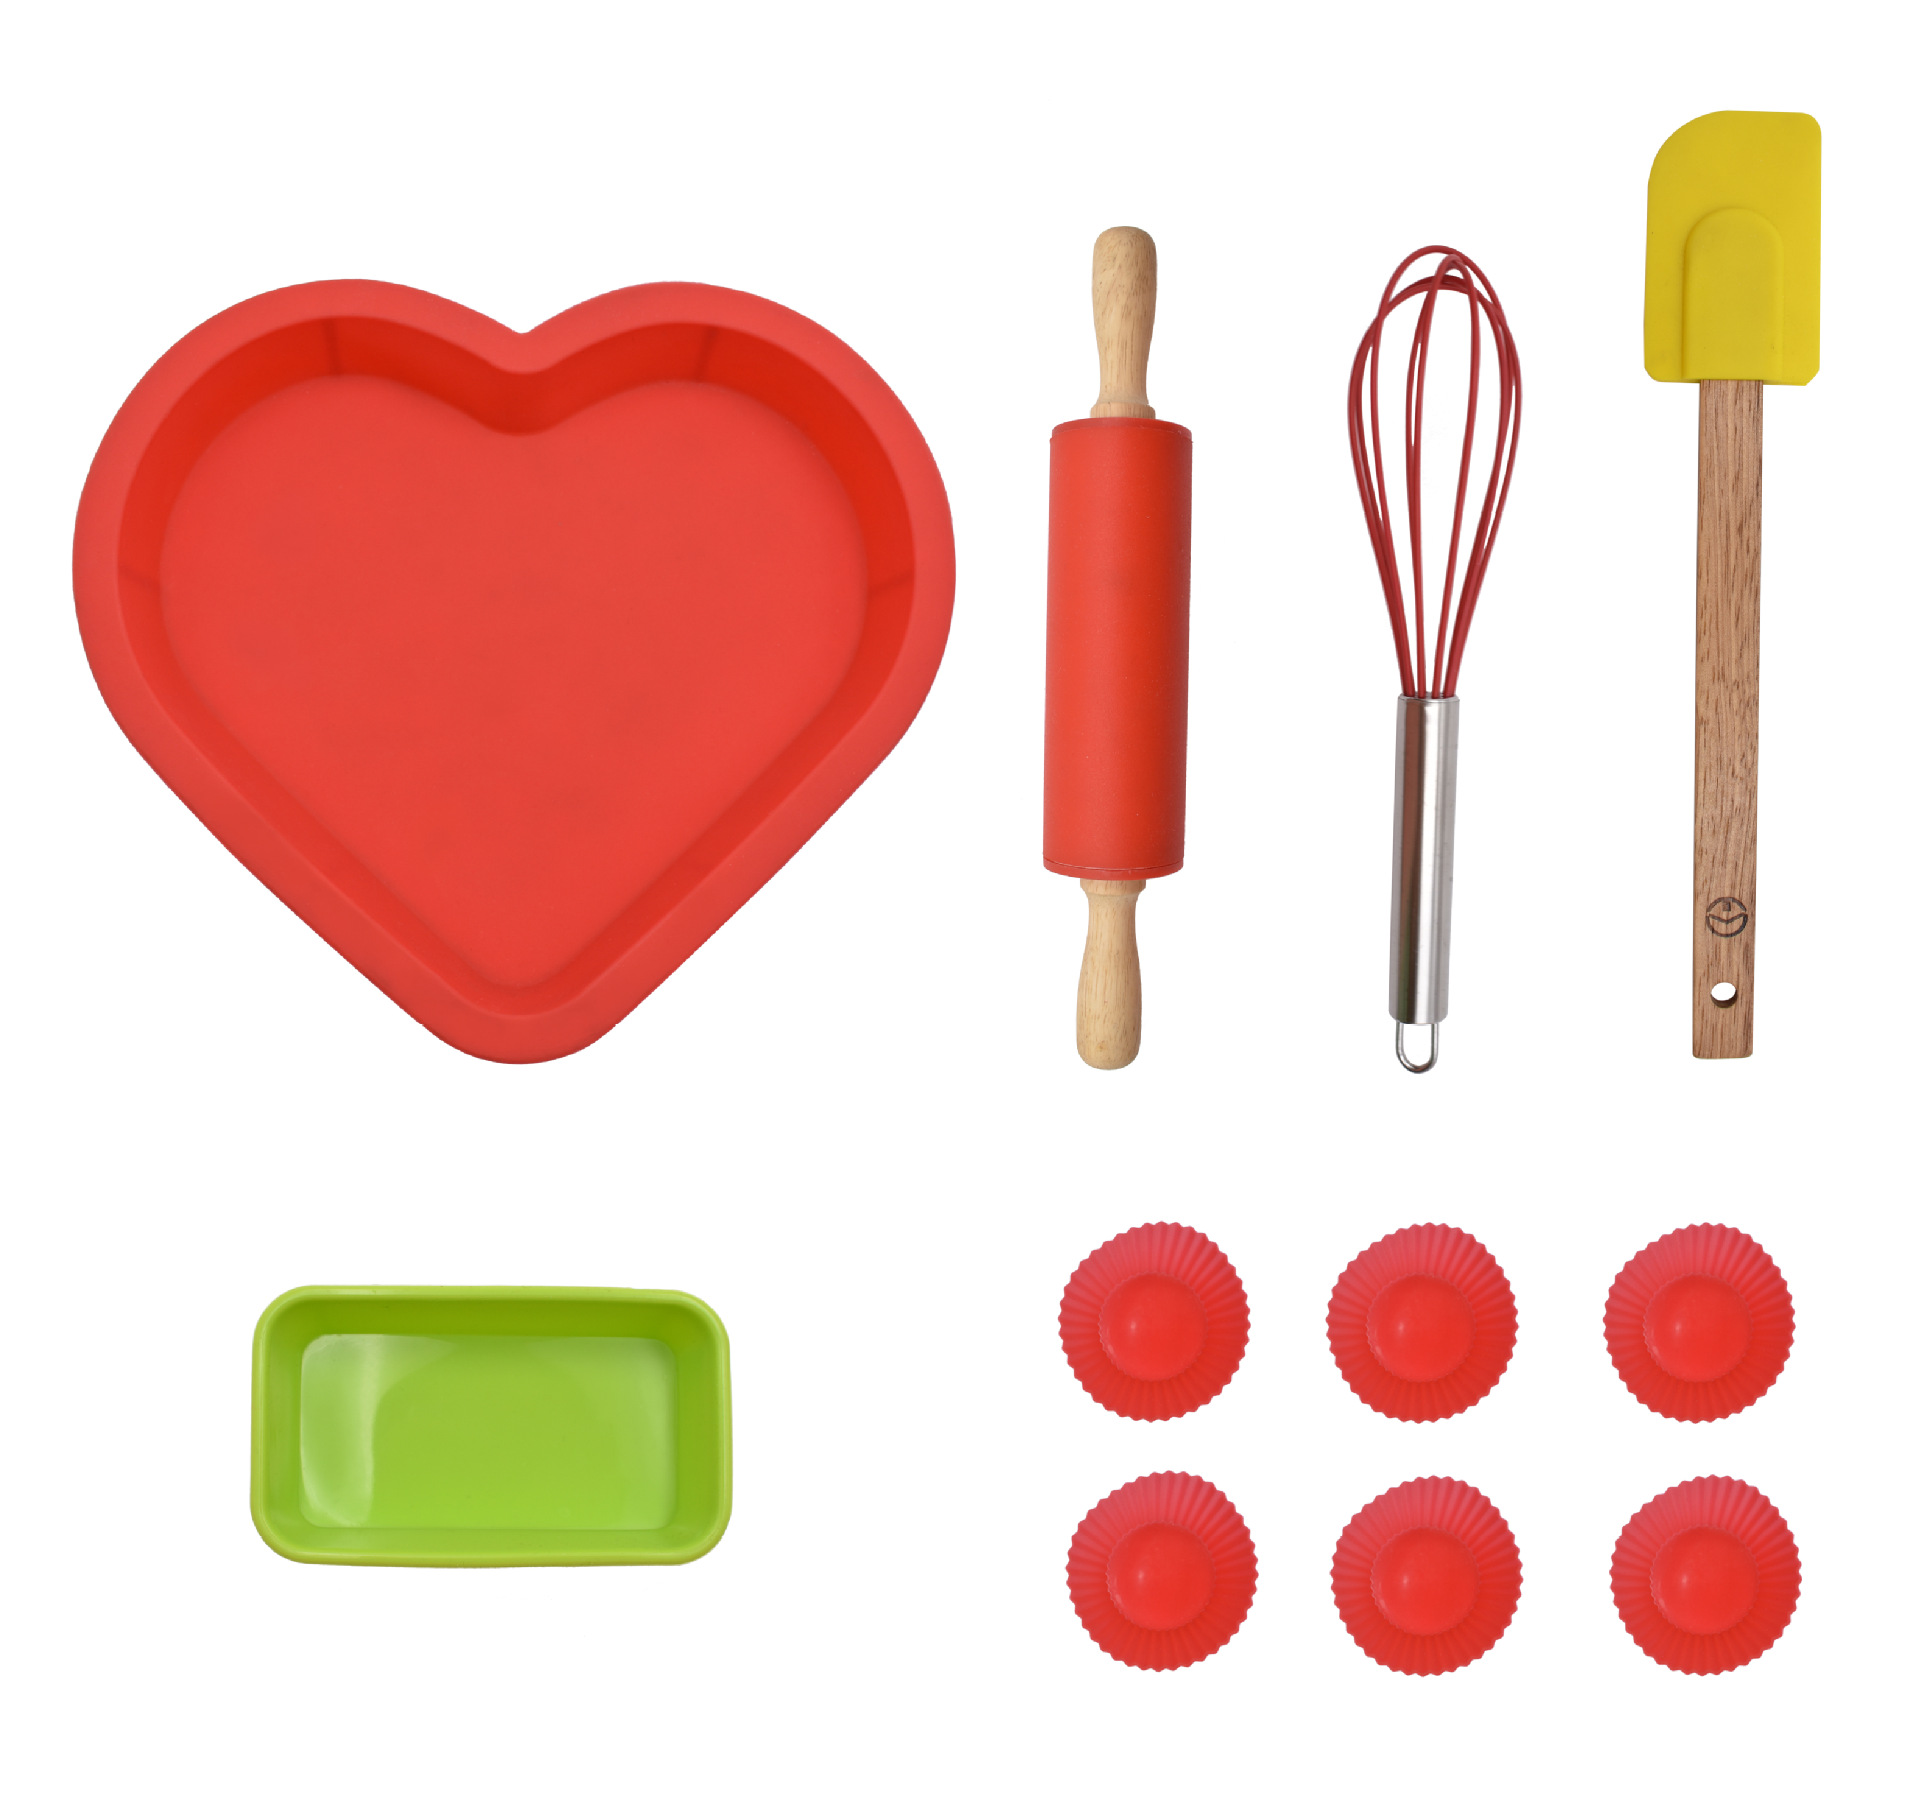 食品级硅胶厨具心形蛋糕模具打蛋器擀面杖刮刀儿童DIY烘焙工具